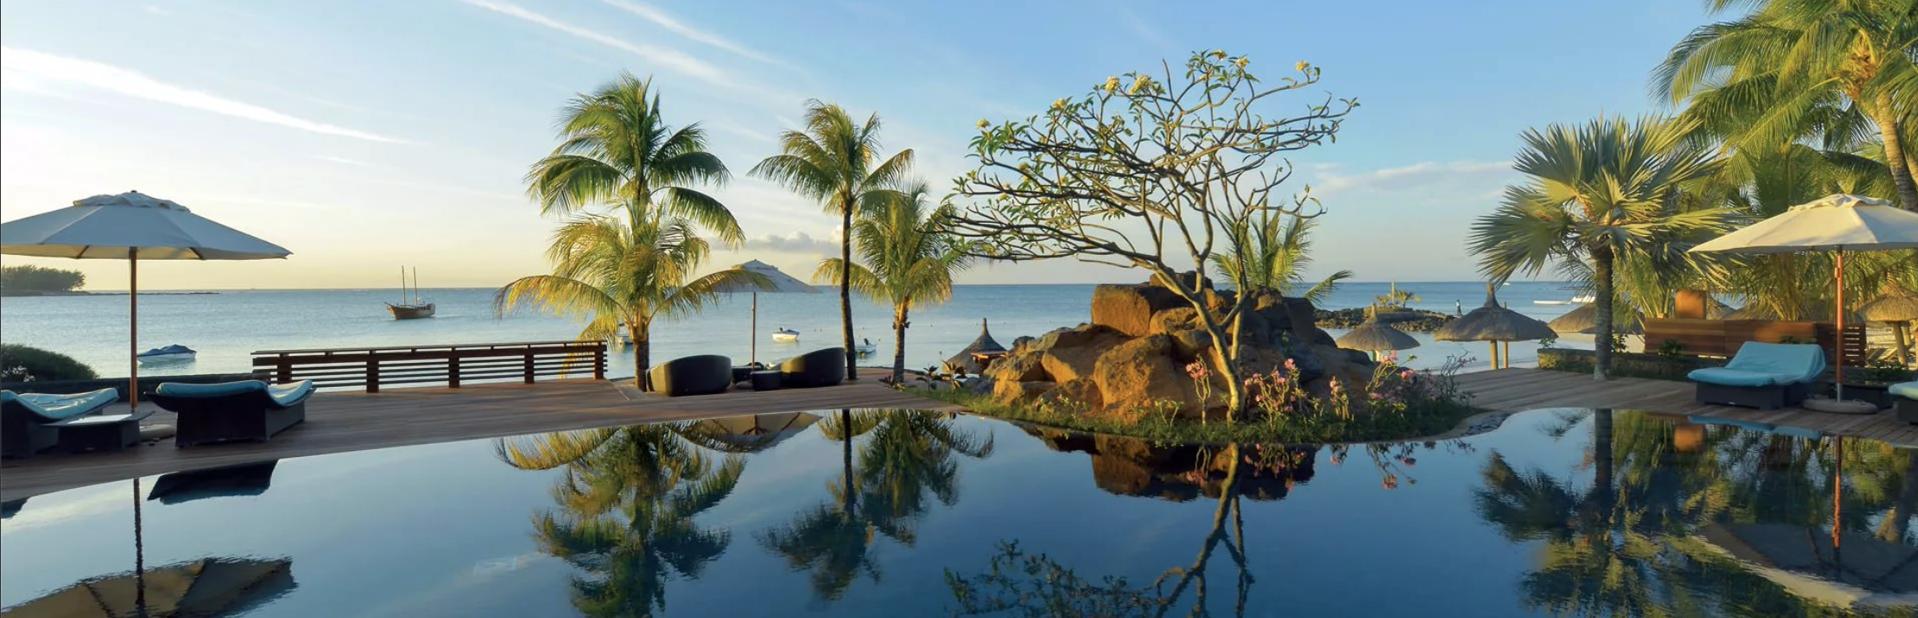 Отель Royal Palm Beachcomber Luxury на Маврикии